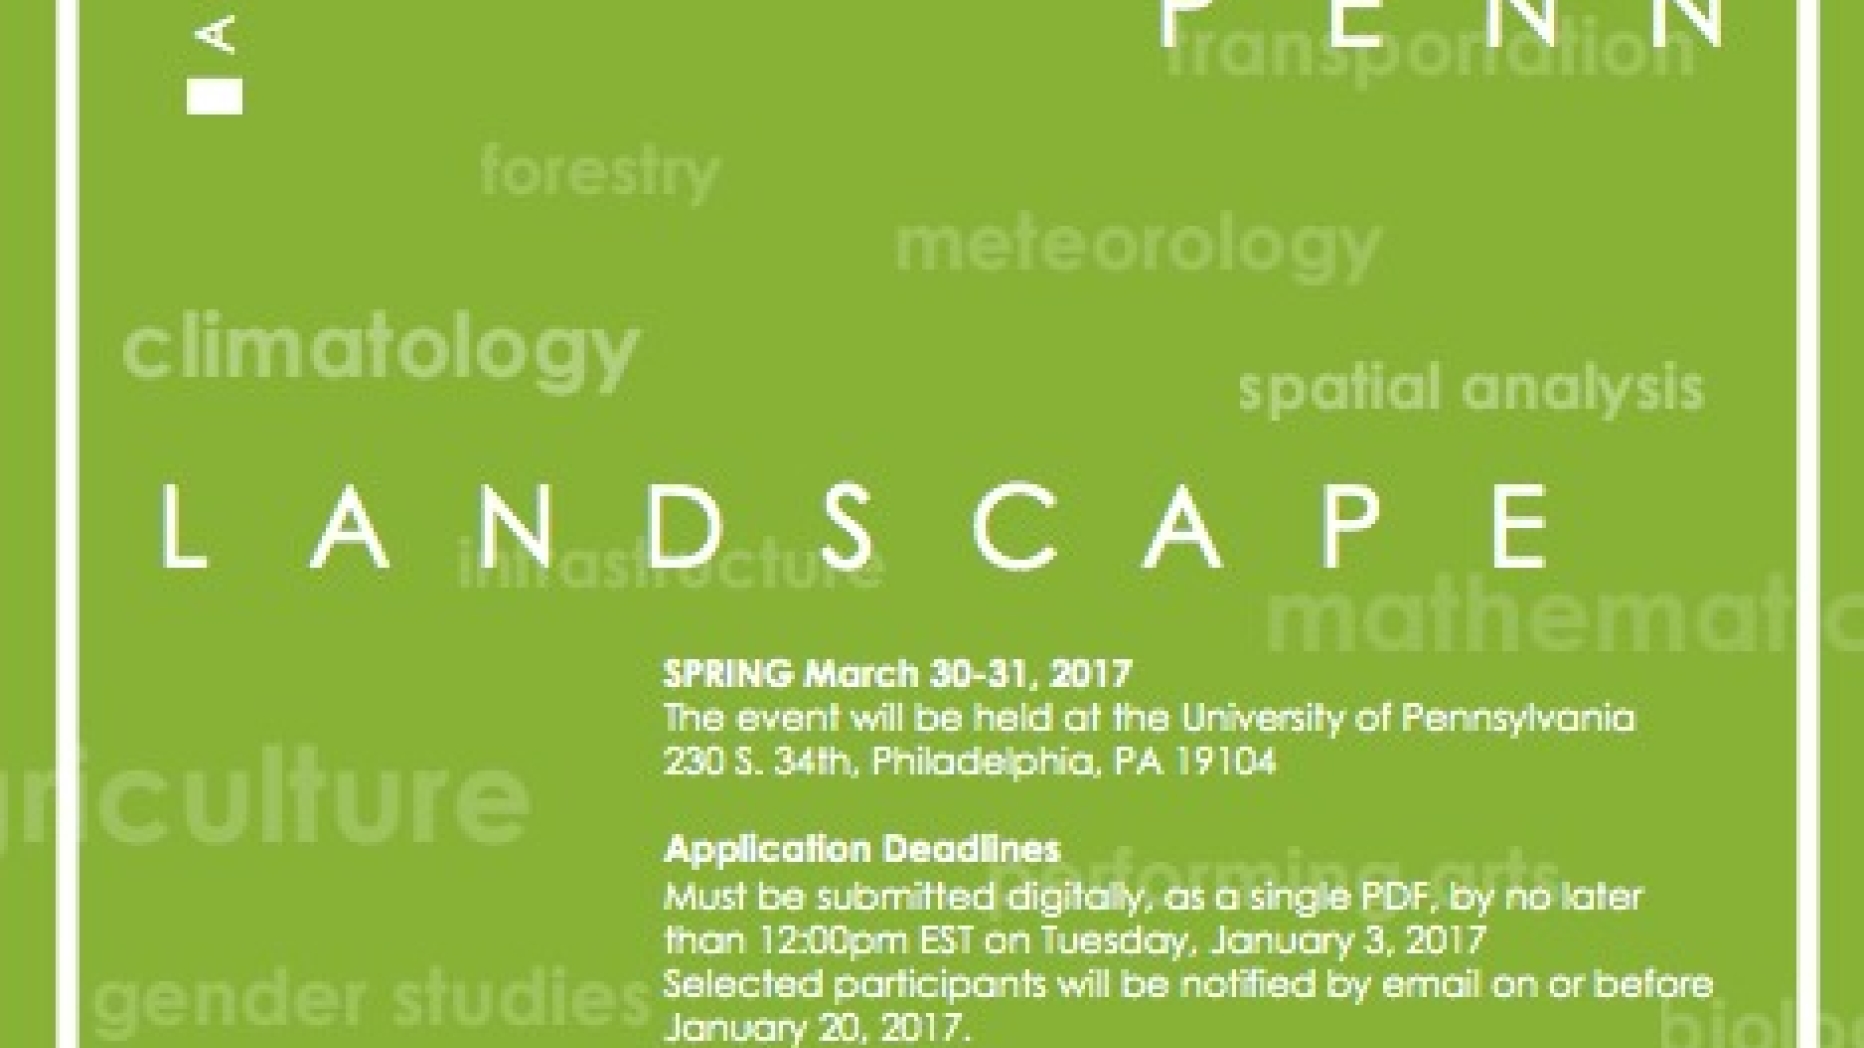 A Landscape Symposium. Penn Landscape Dialogues